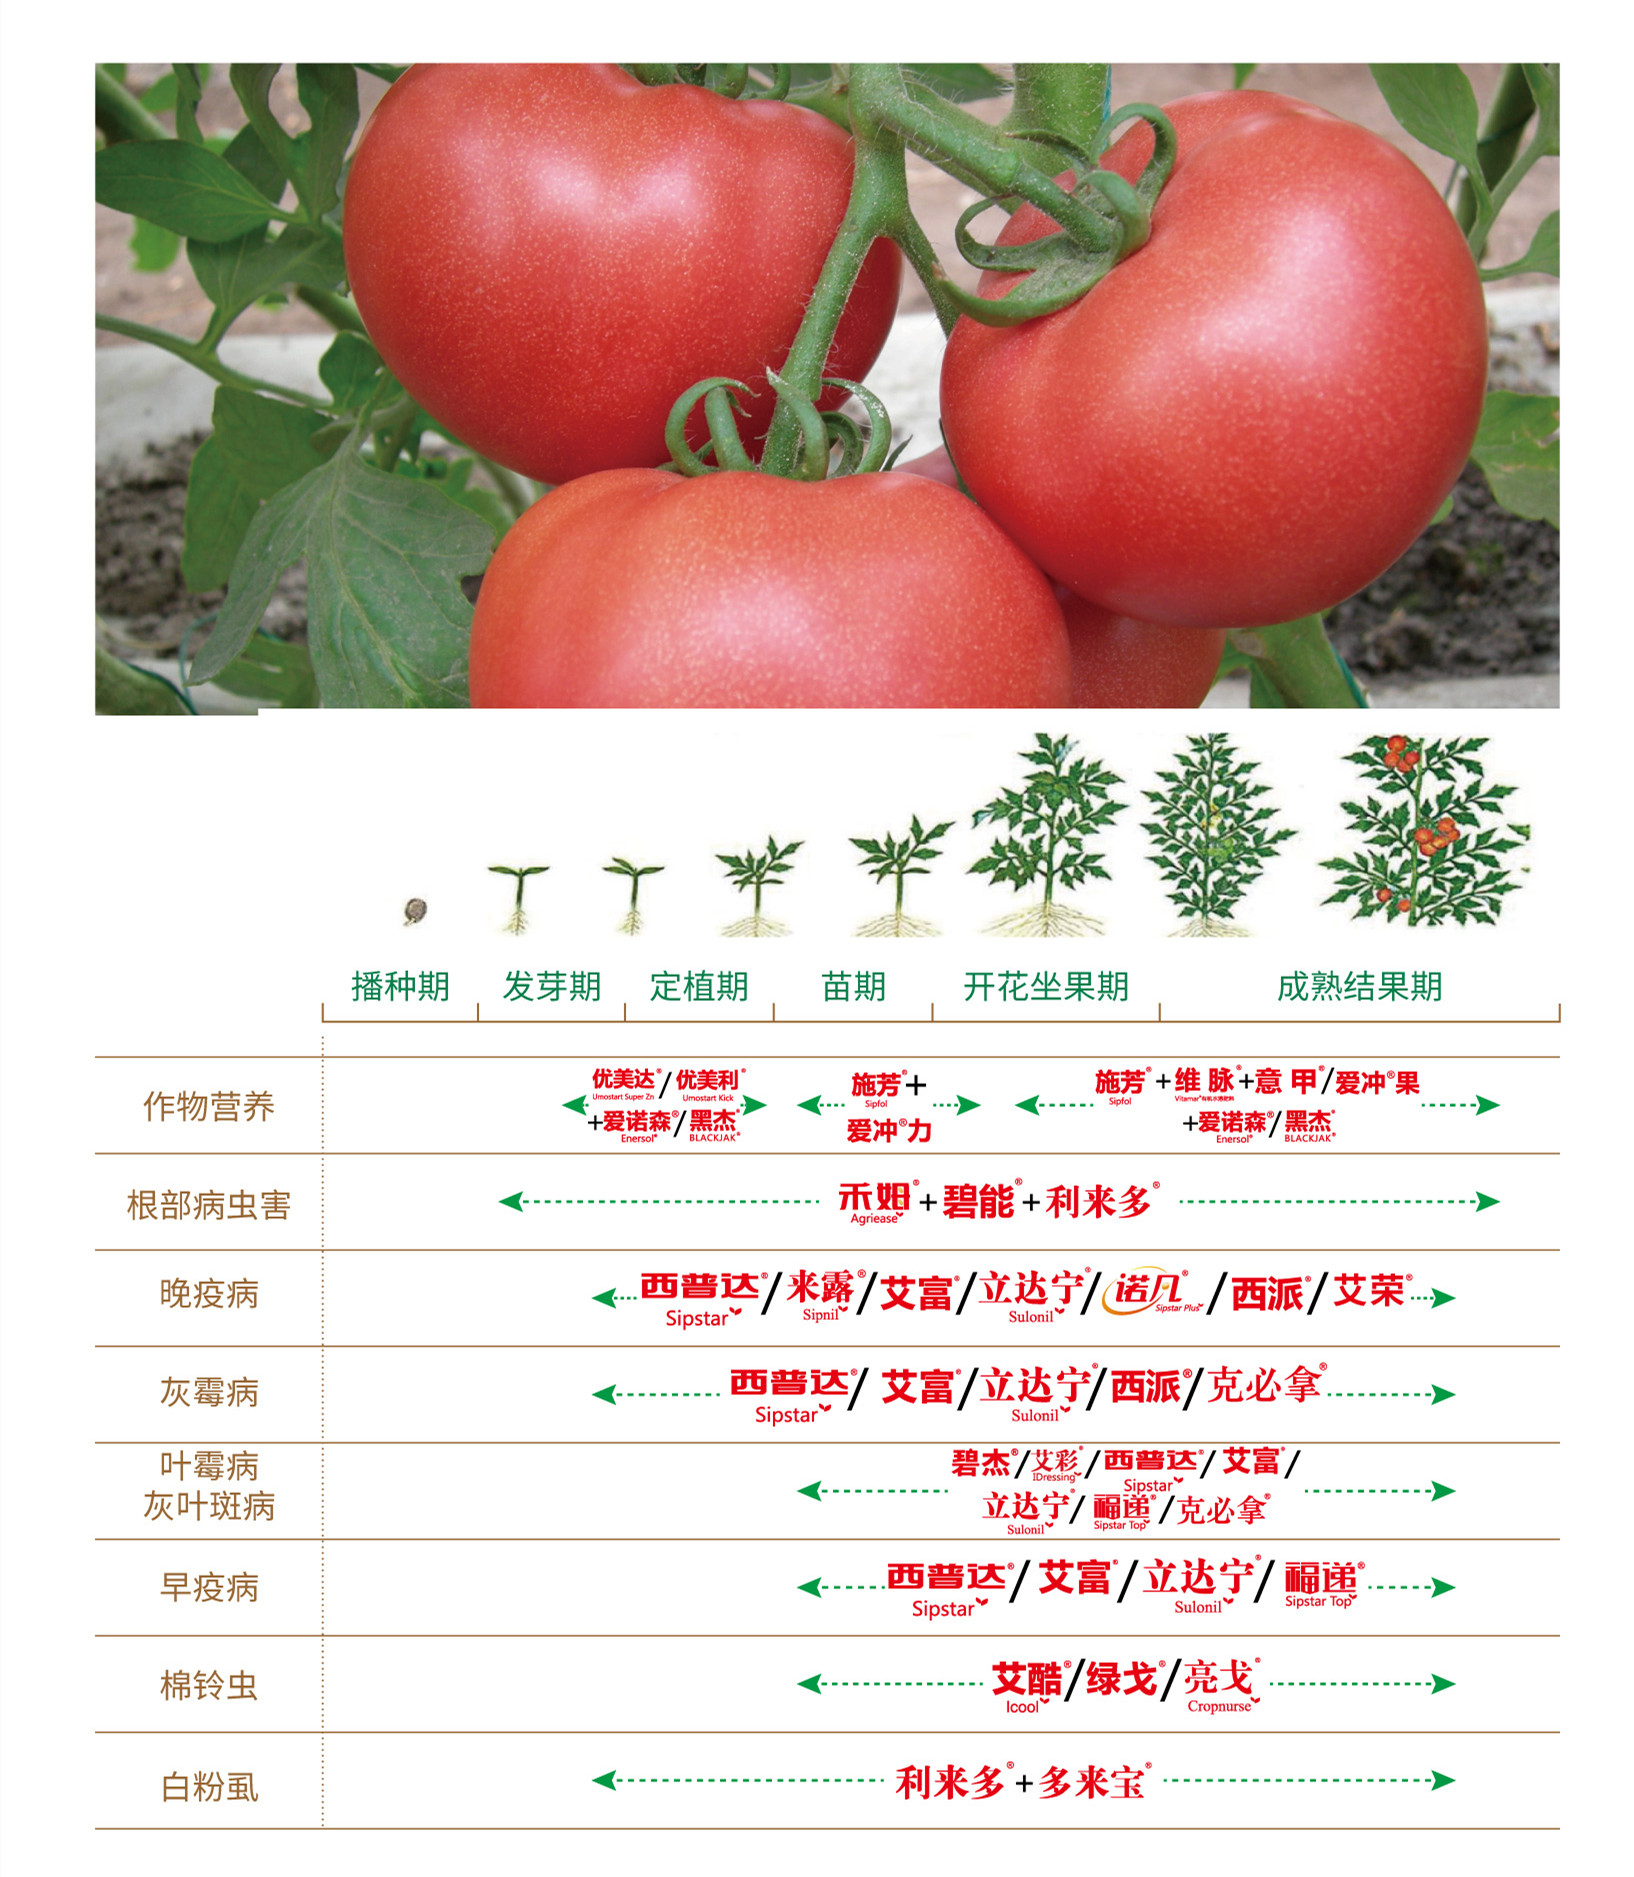 番茄药肥一体化解决方案